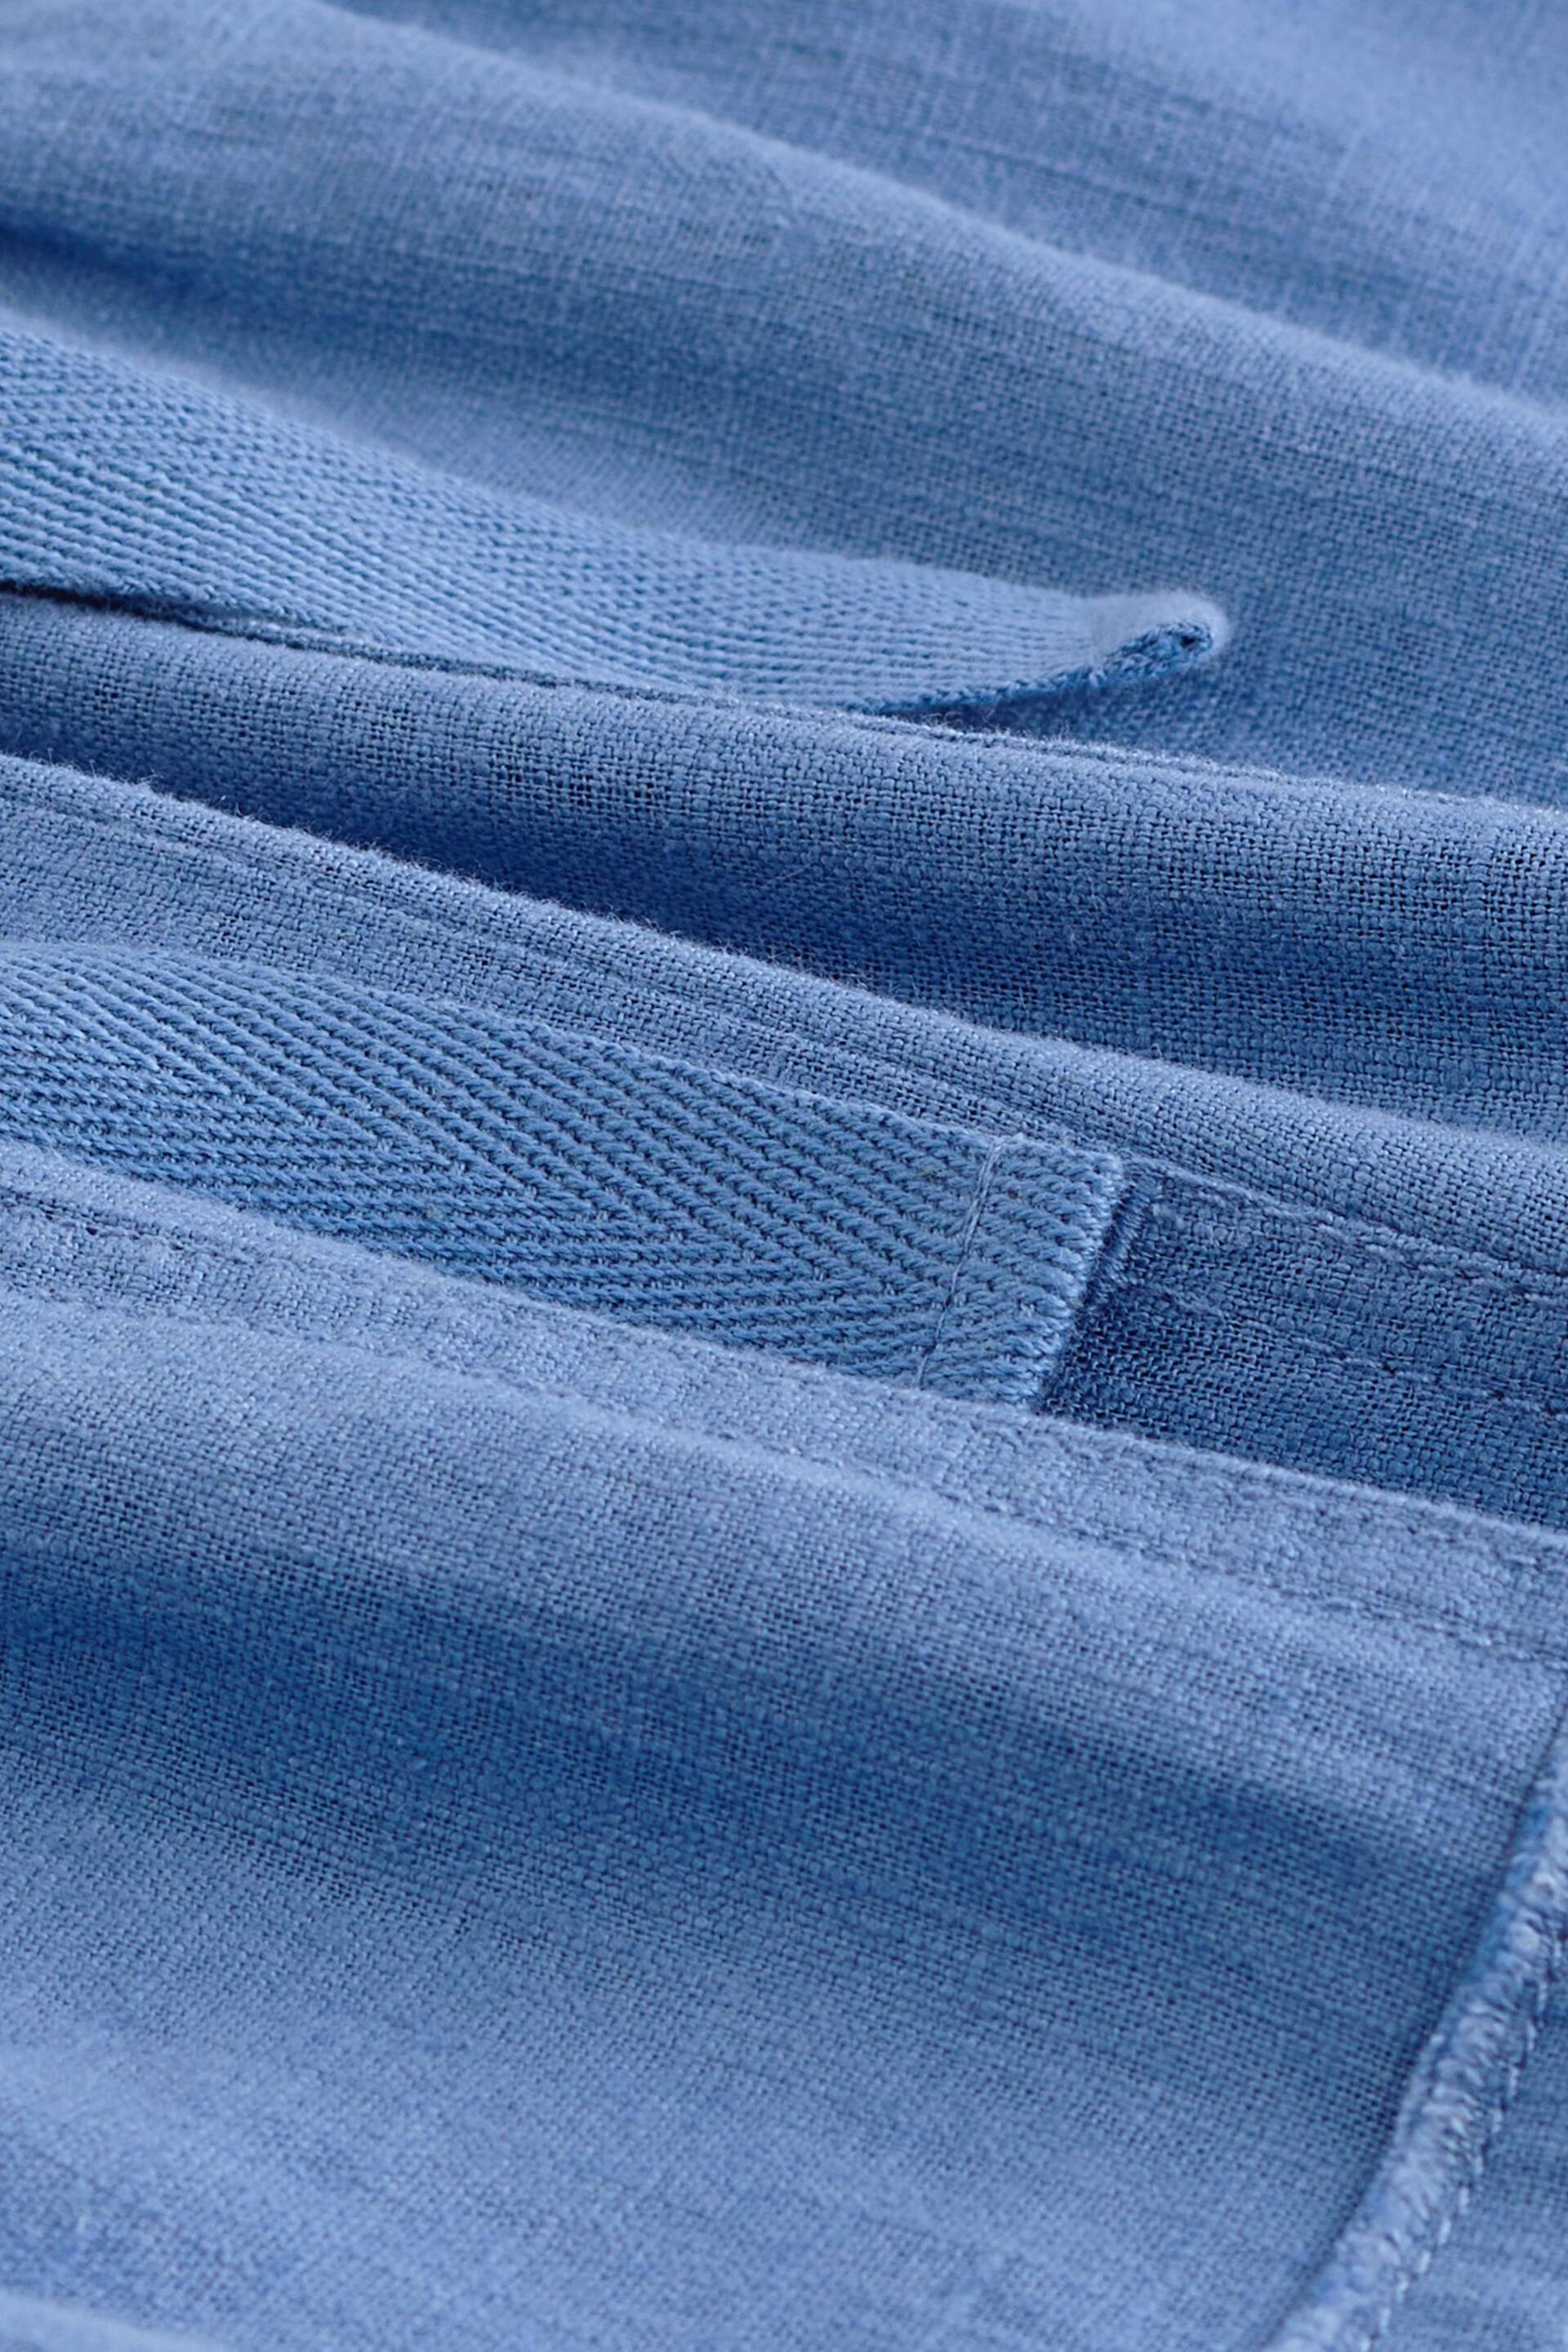 Blue Linen Blend Parachute Trousers - Image 7 of 7